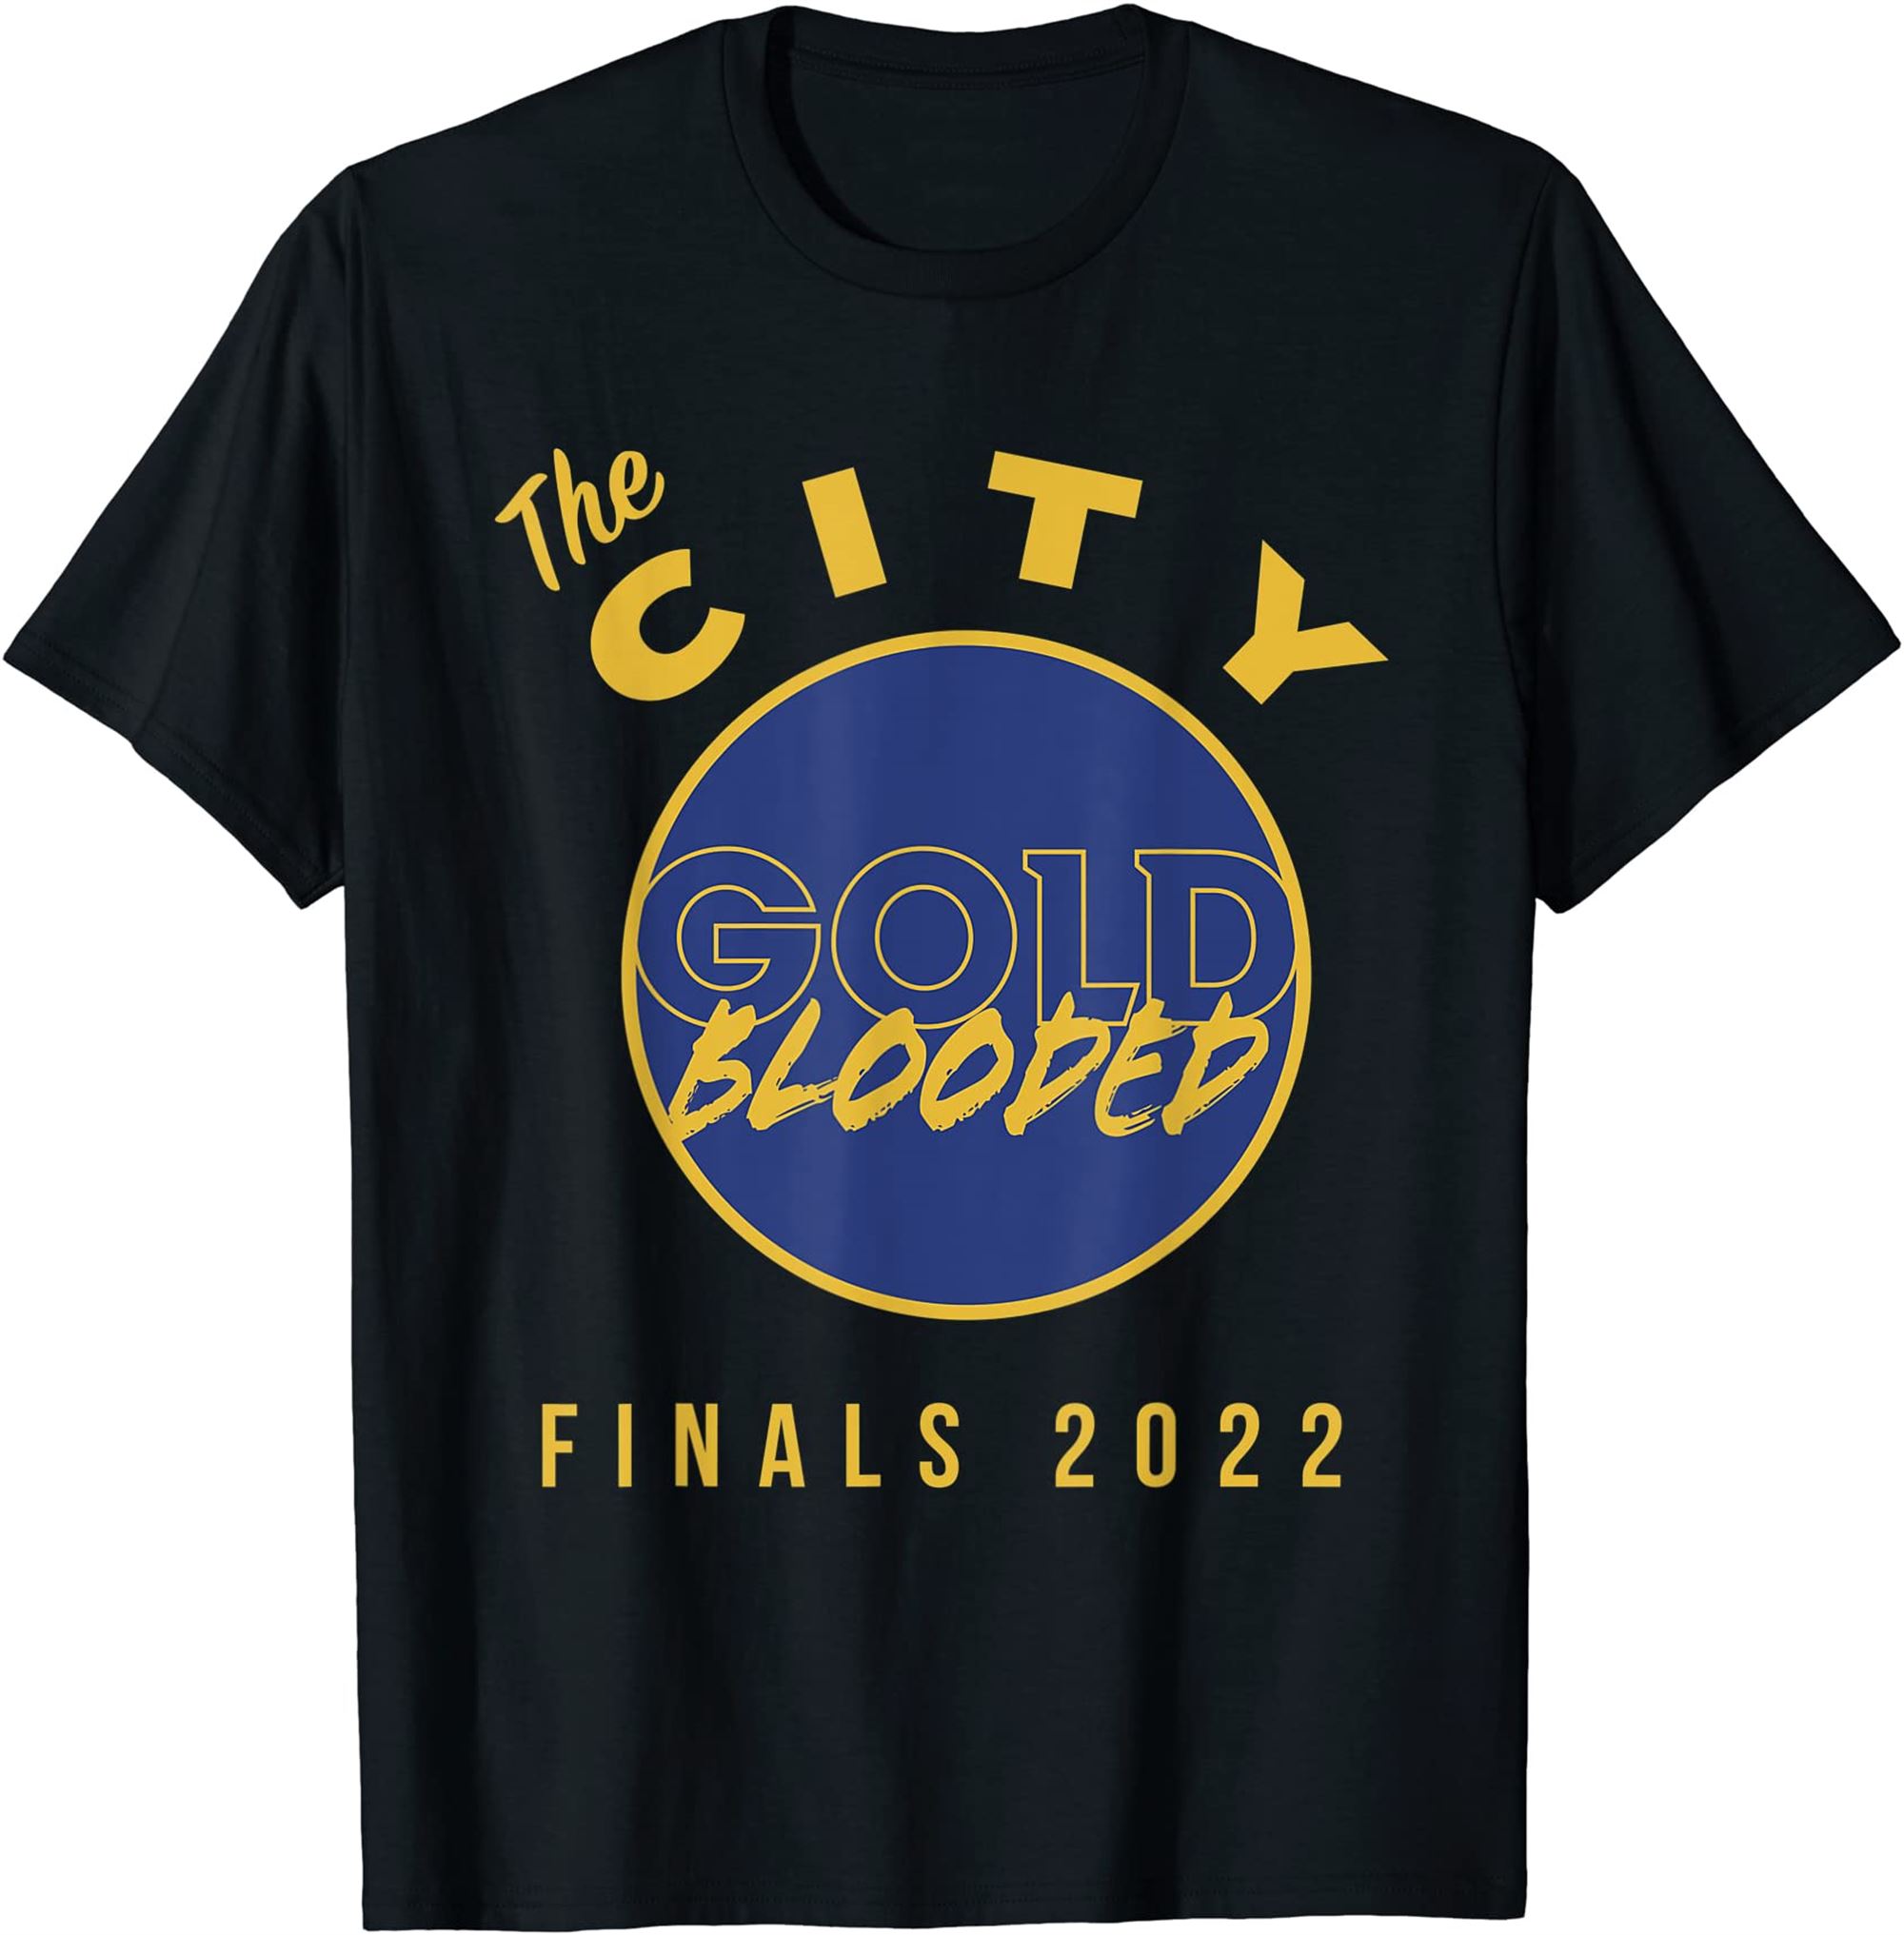 Warriors Finals 2022 Basketball T-shirt Size Up To 5xl